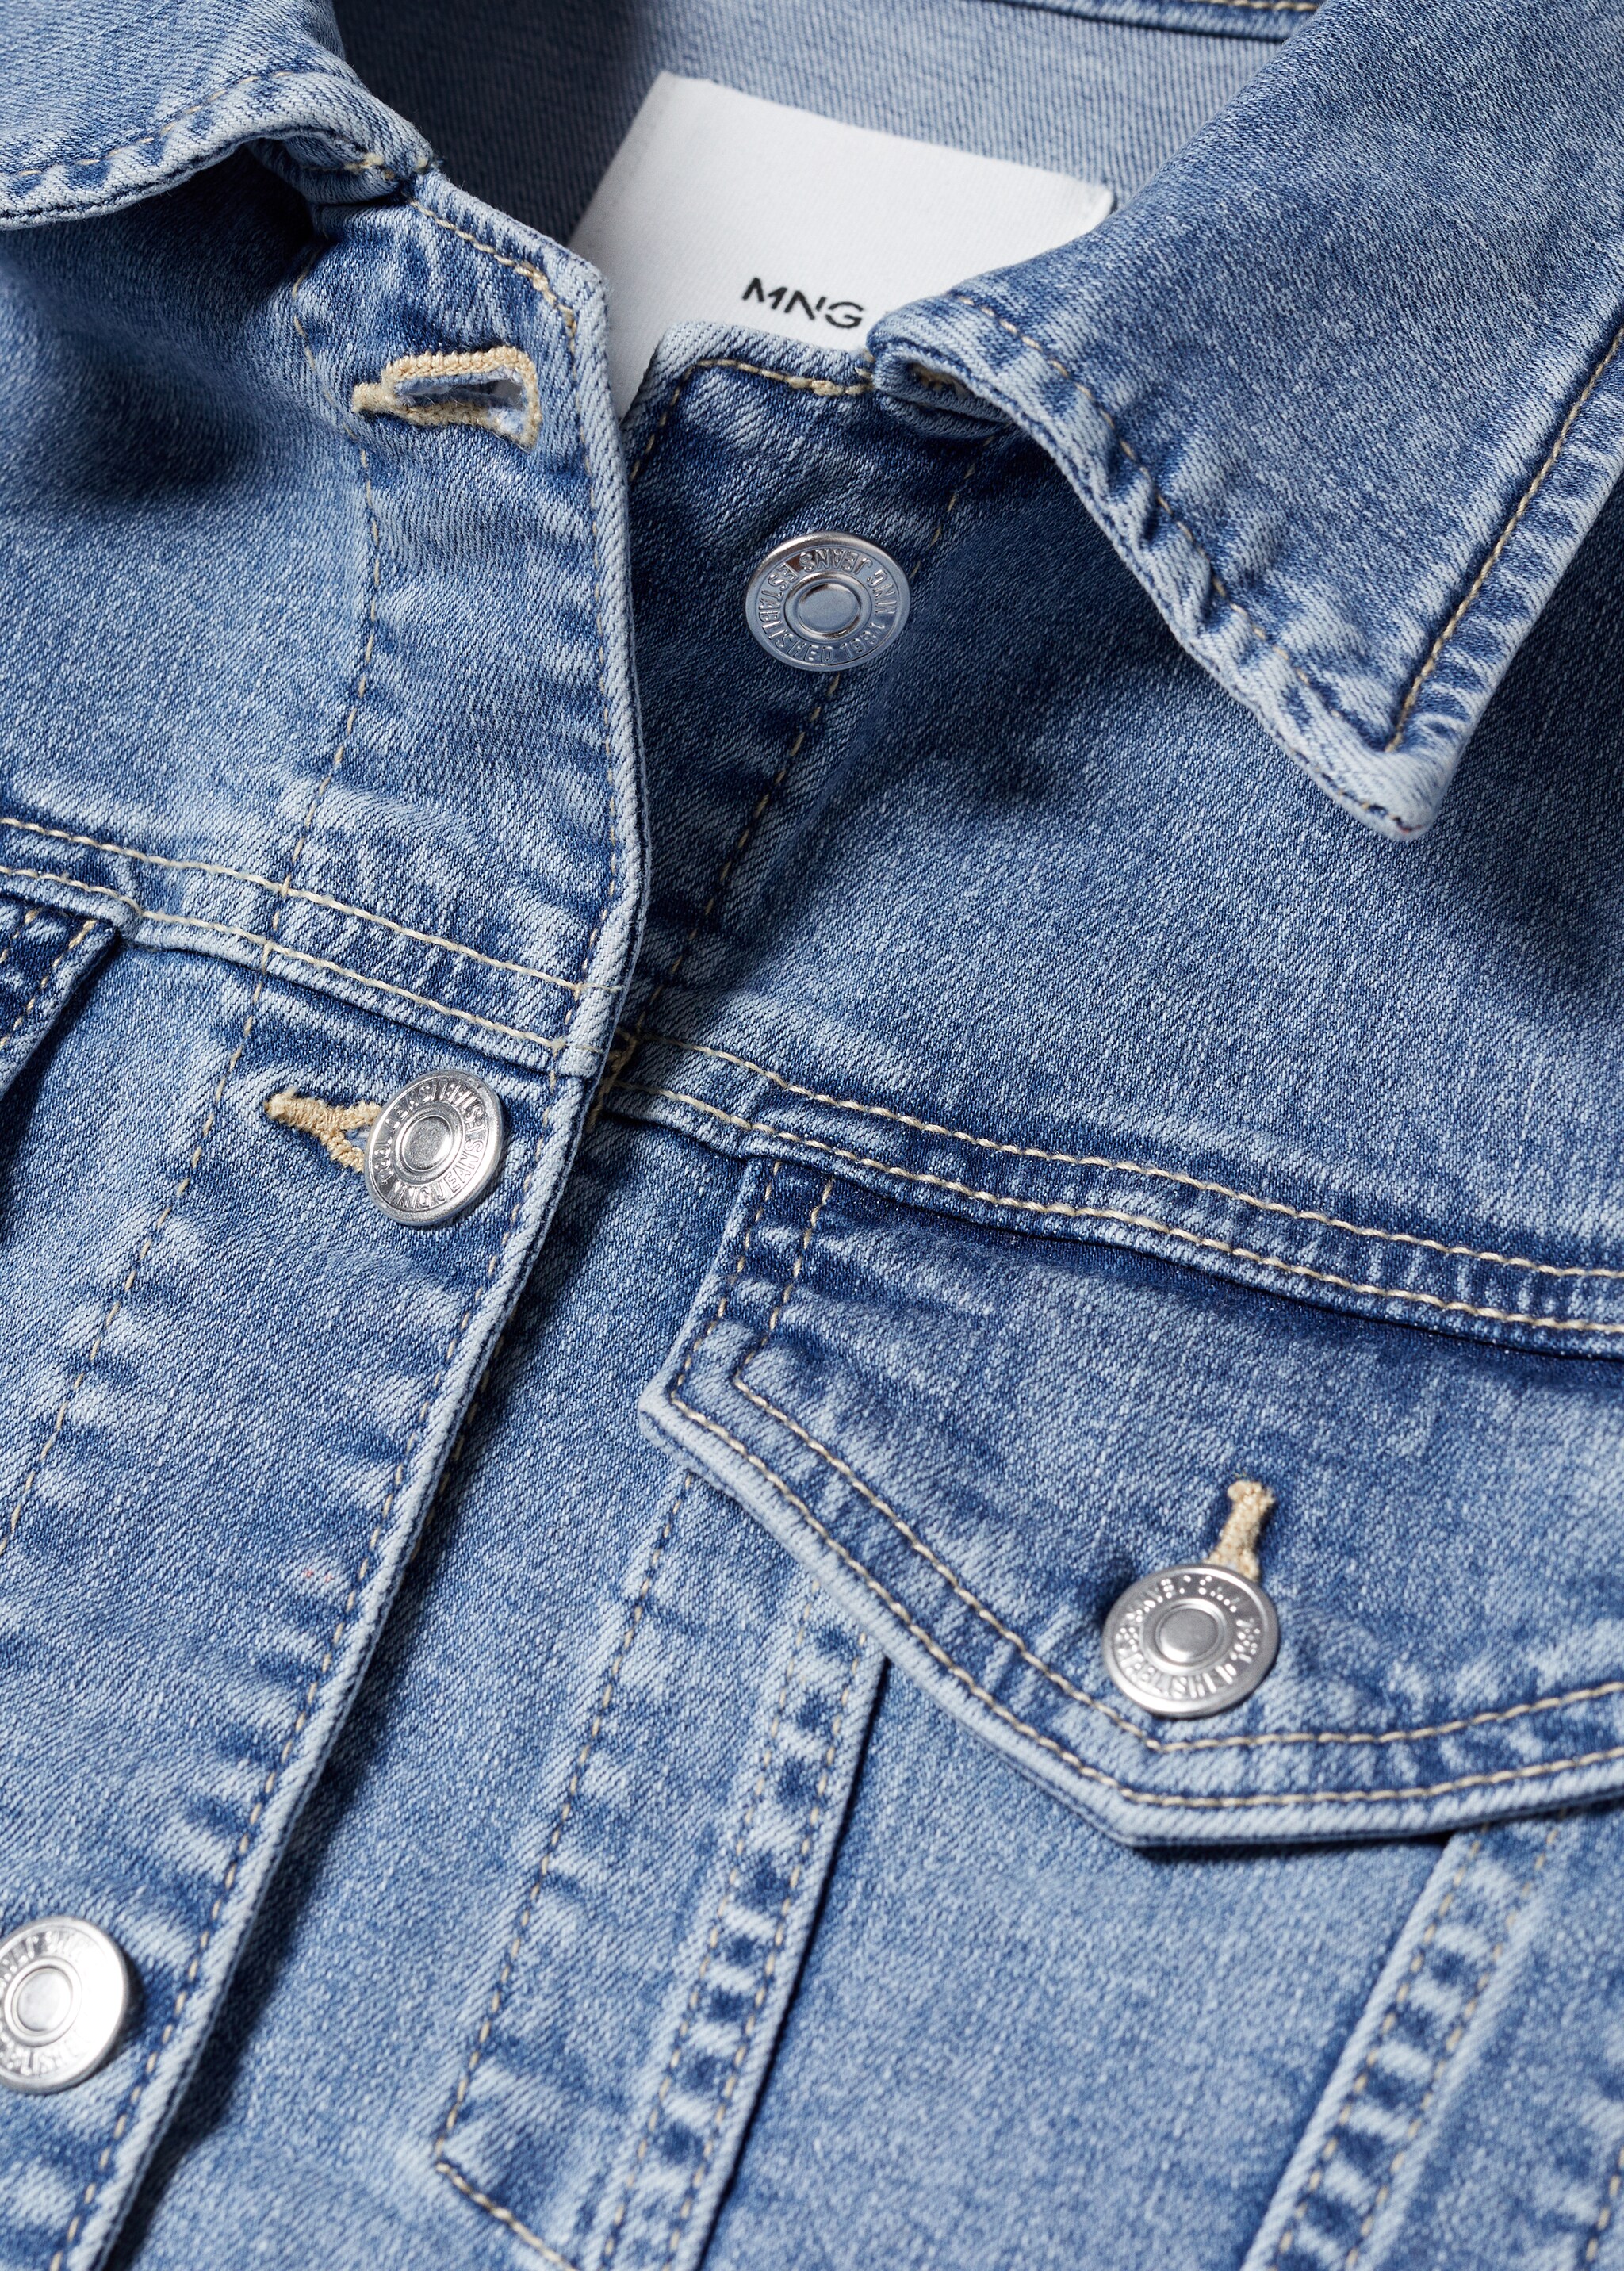 Jeansjacke mit Taschen - Detail des Artikels 8